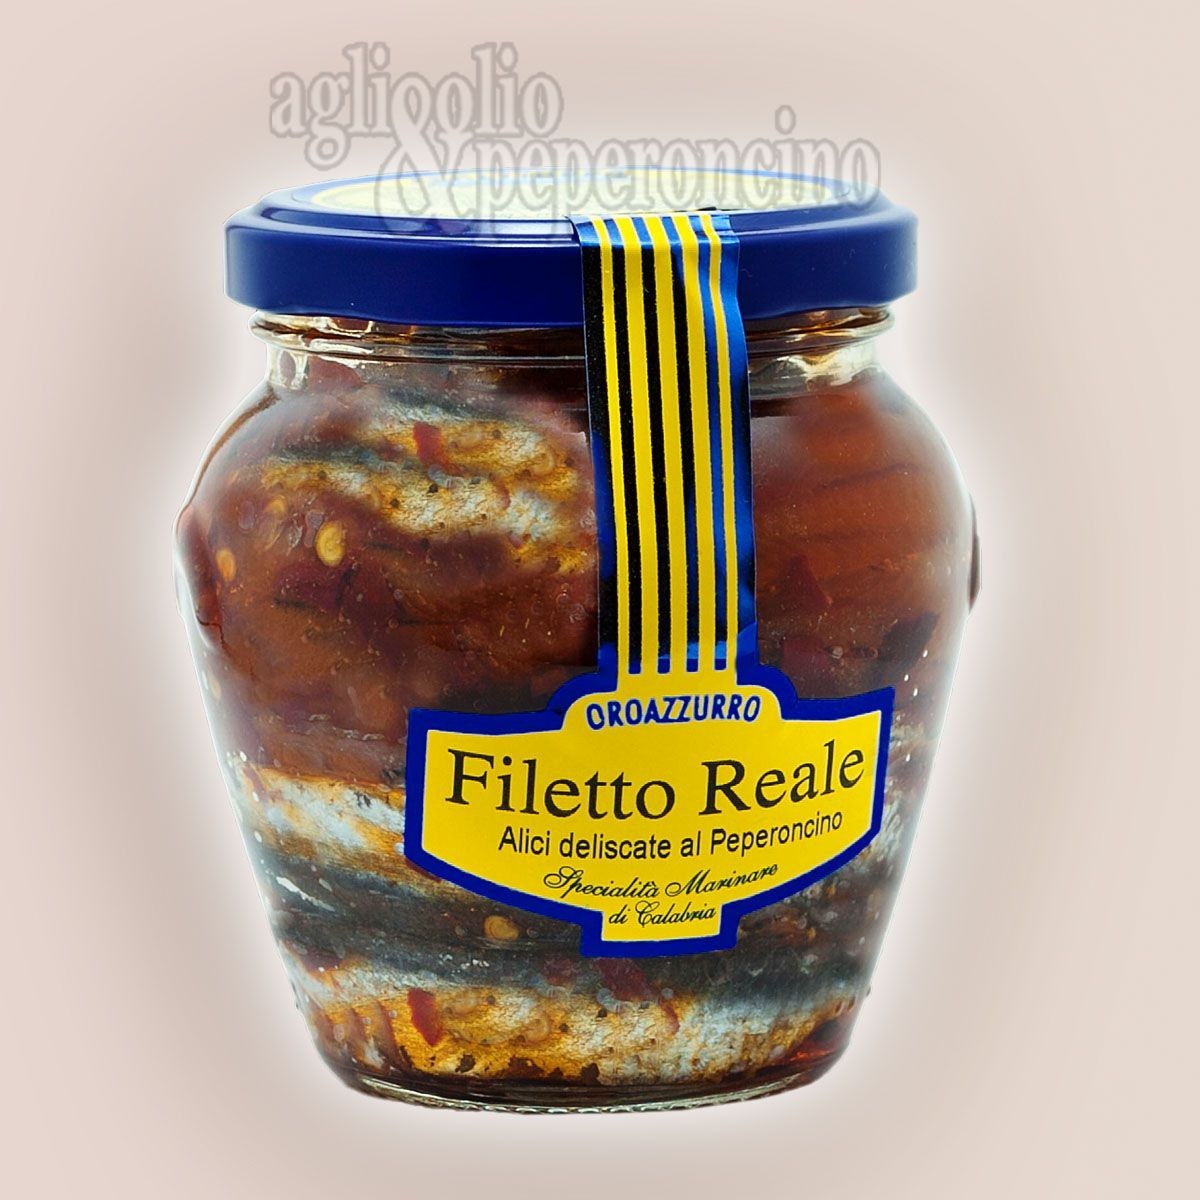 Filetto Reale Oro Azzurro - Alici deliscate al peperoncino in olio extravergine di oliva in vasetto di vetro